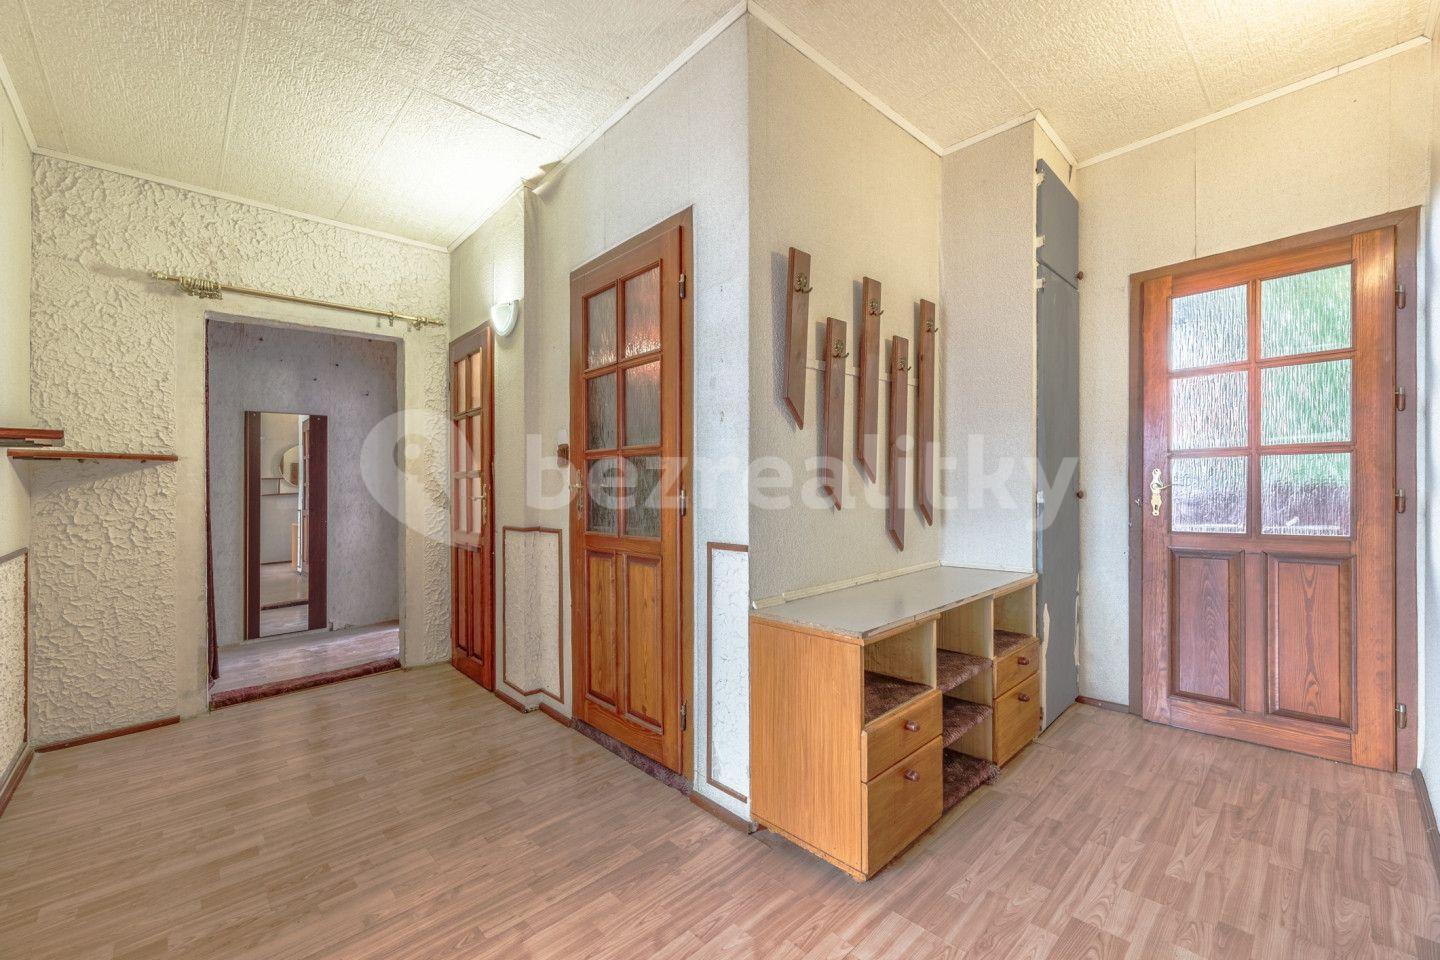 2 bedroom flat for sale, 57 m², Nádražní, Nové Město pod Smrkem, Liberecký Region